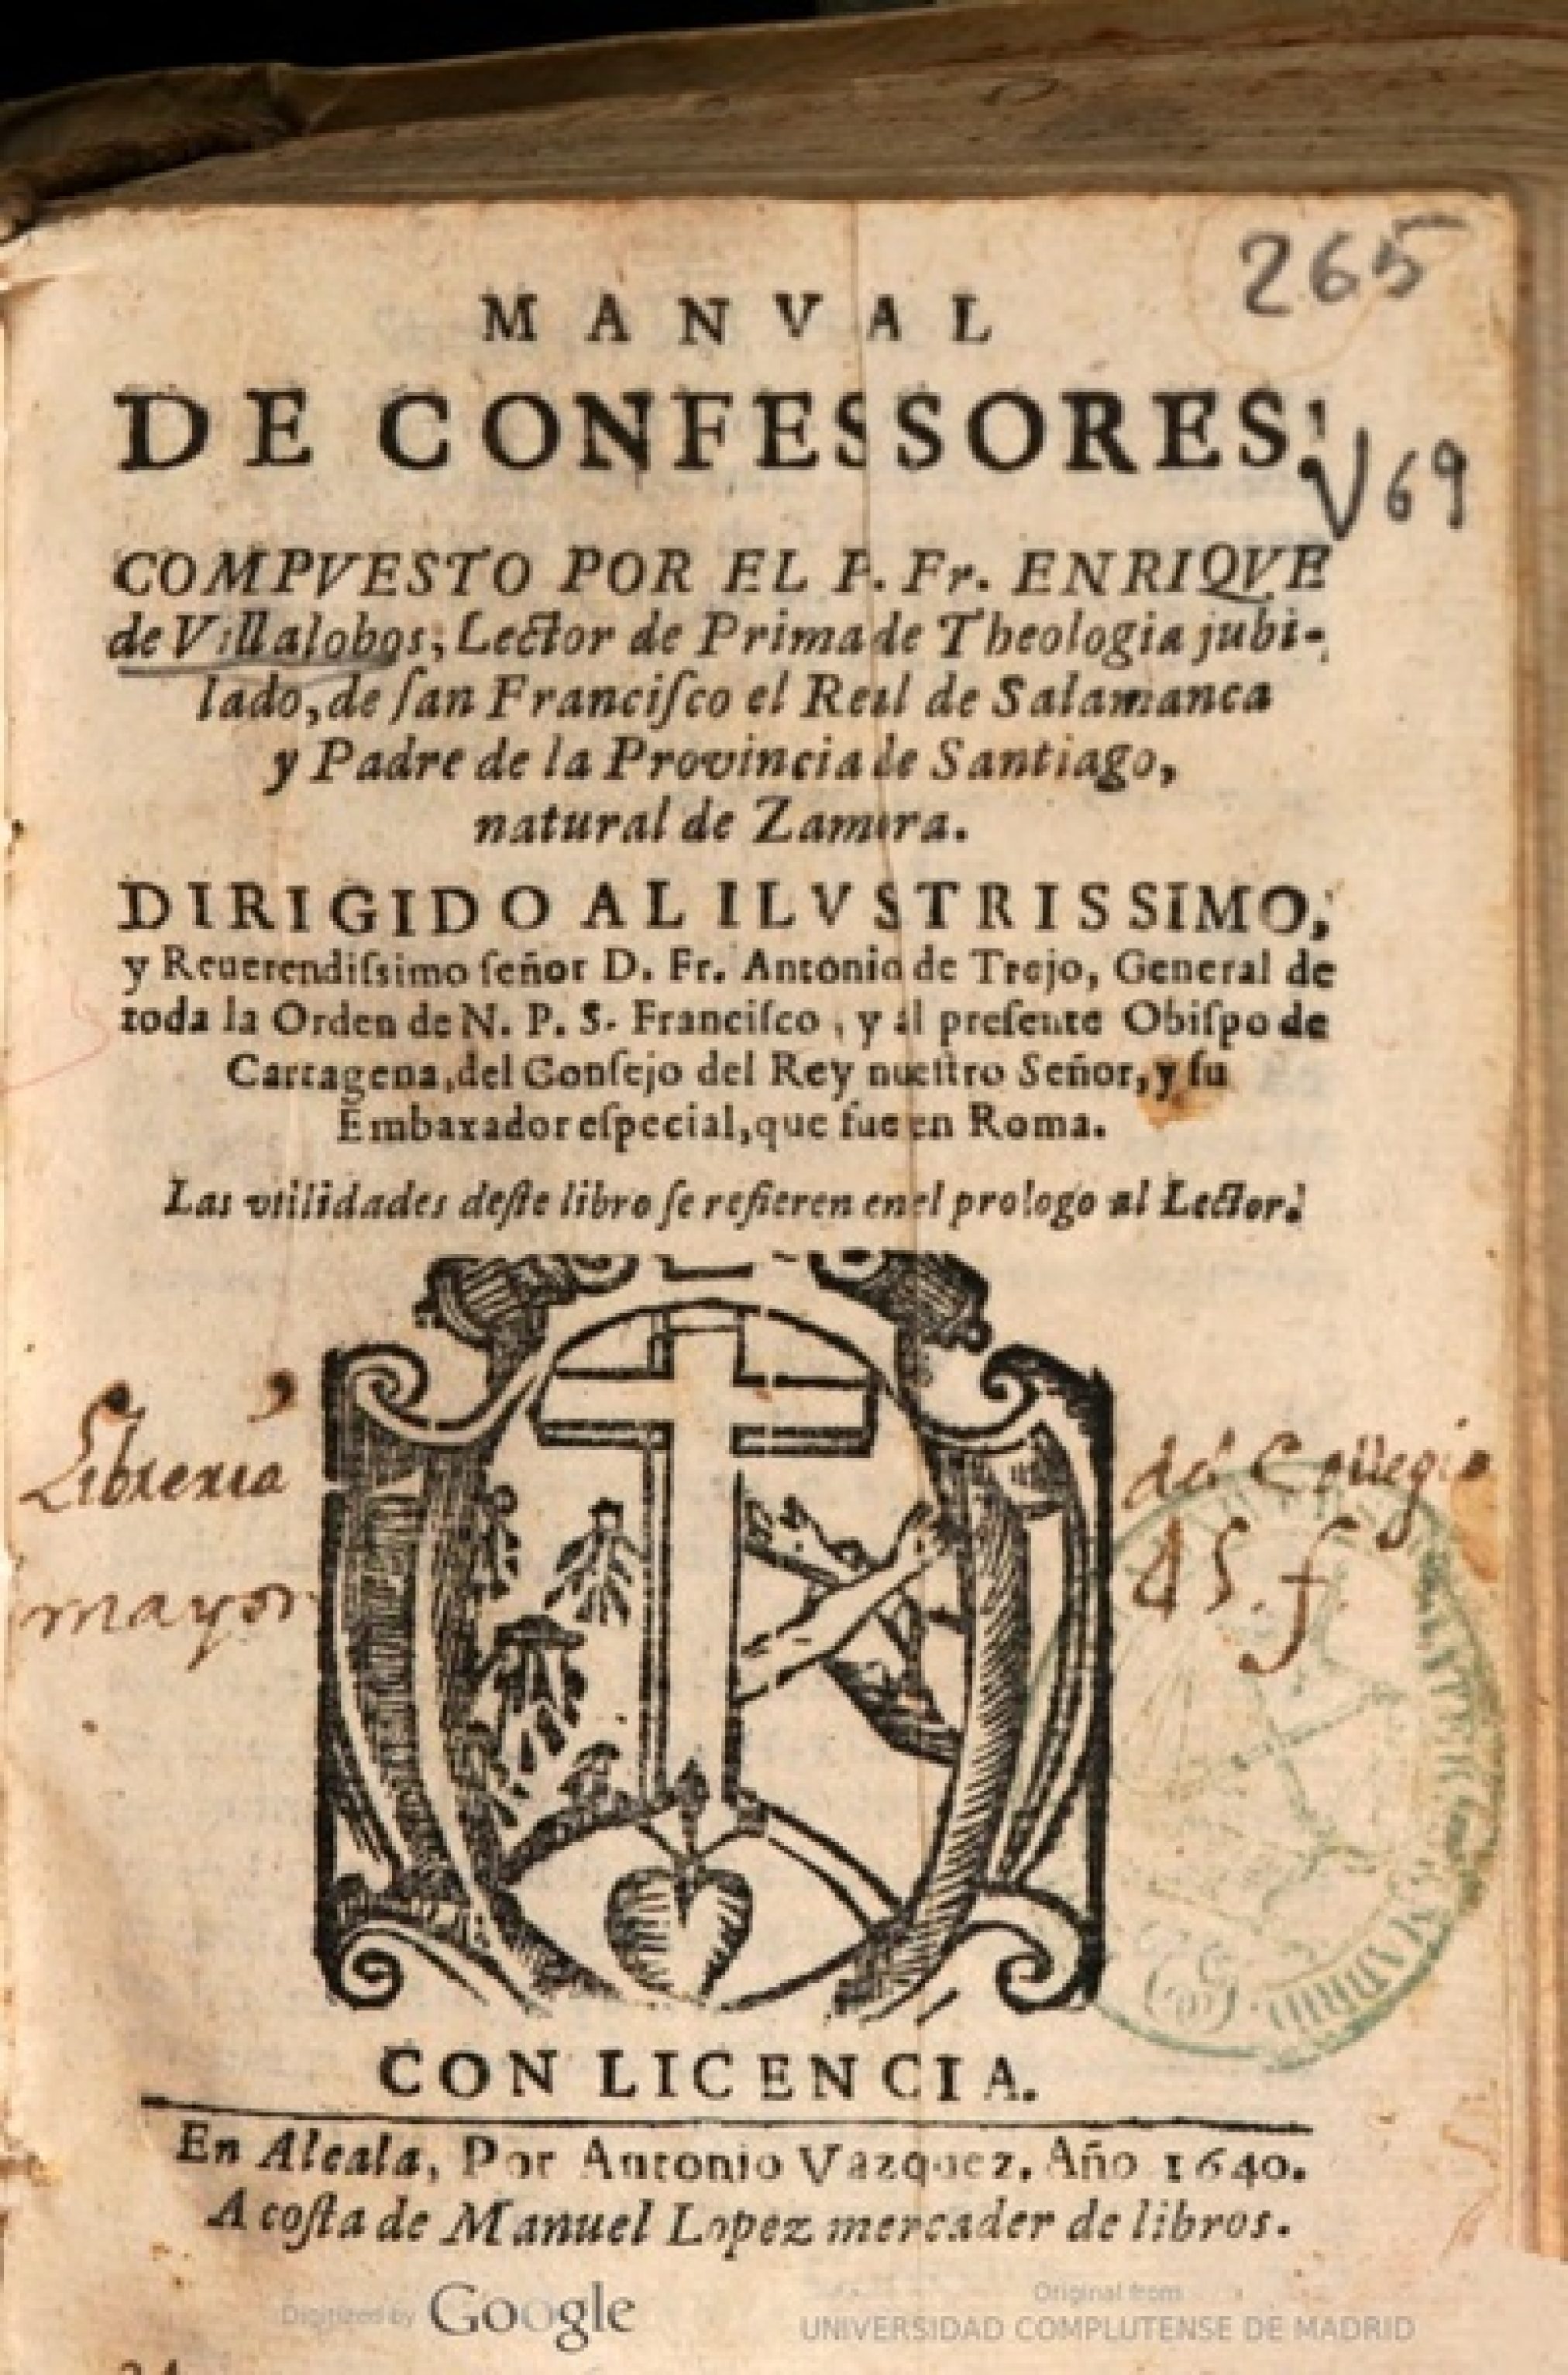 Manual de Confessores